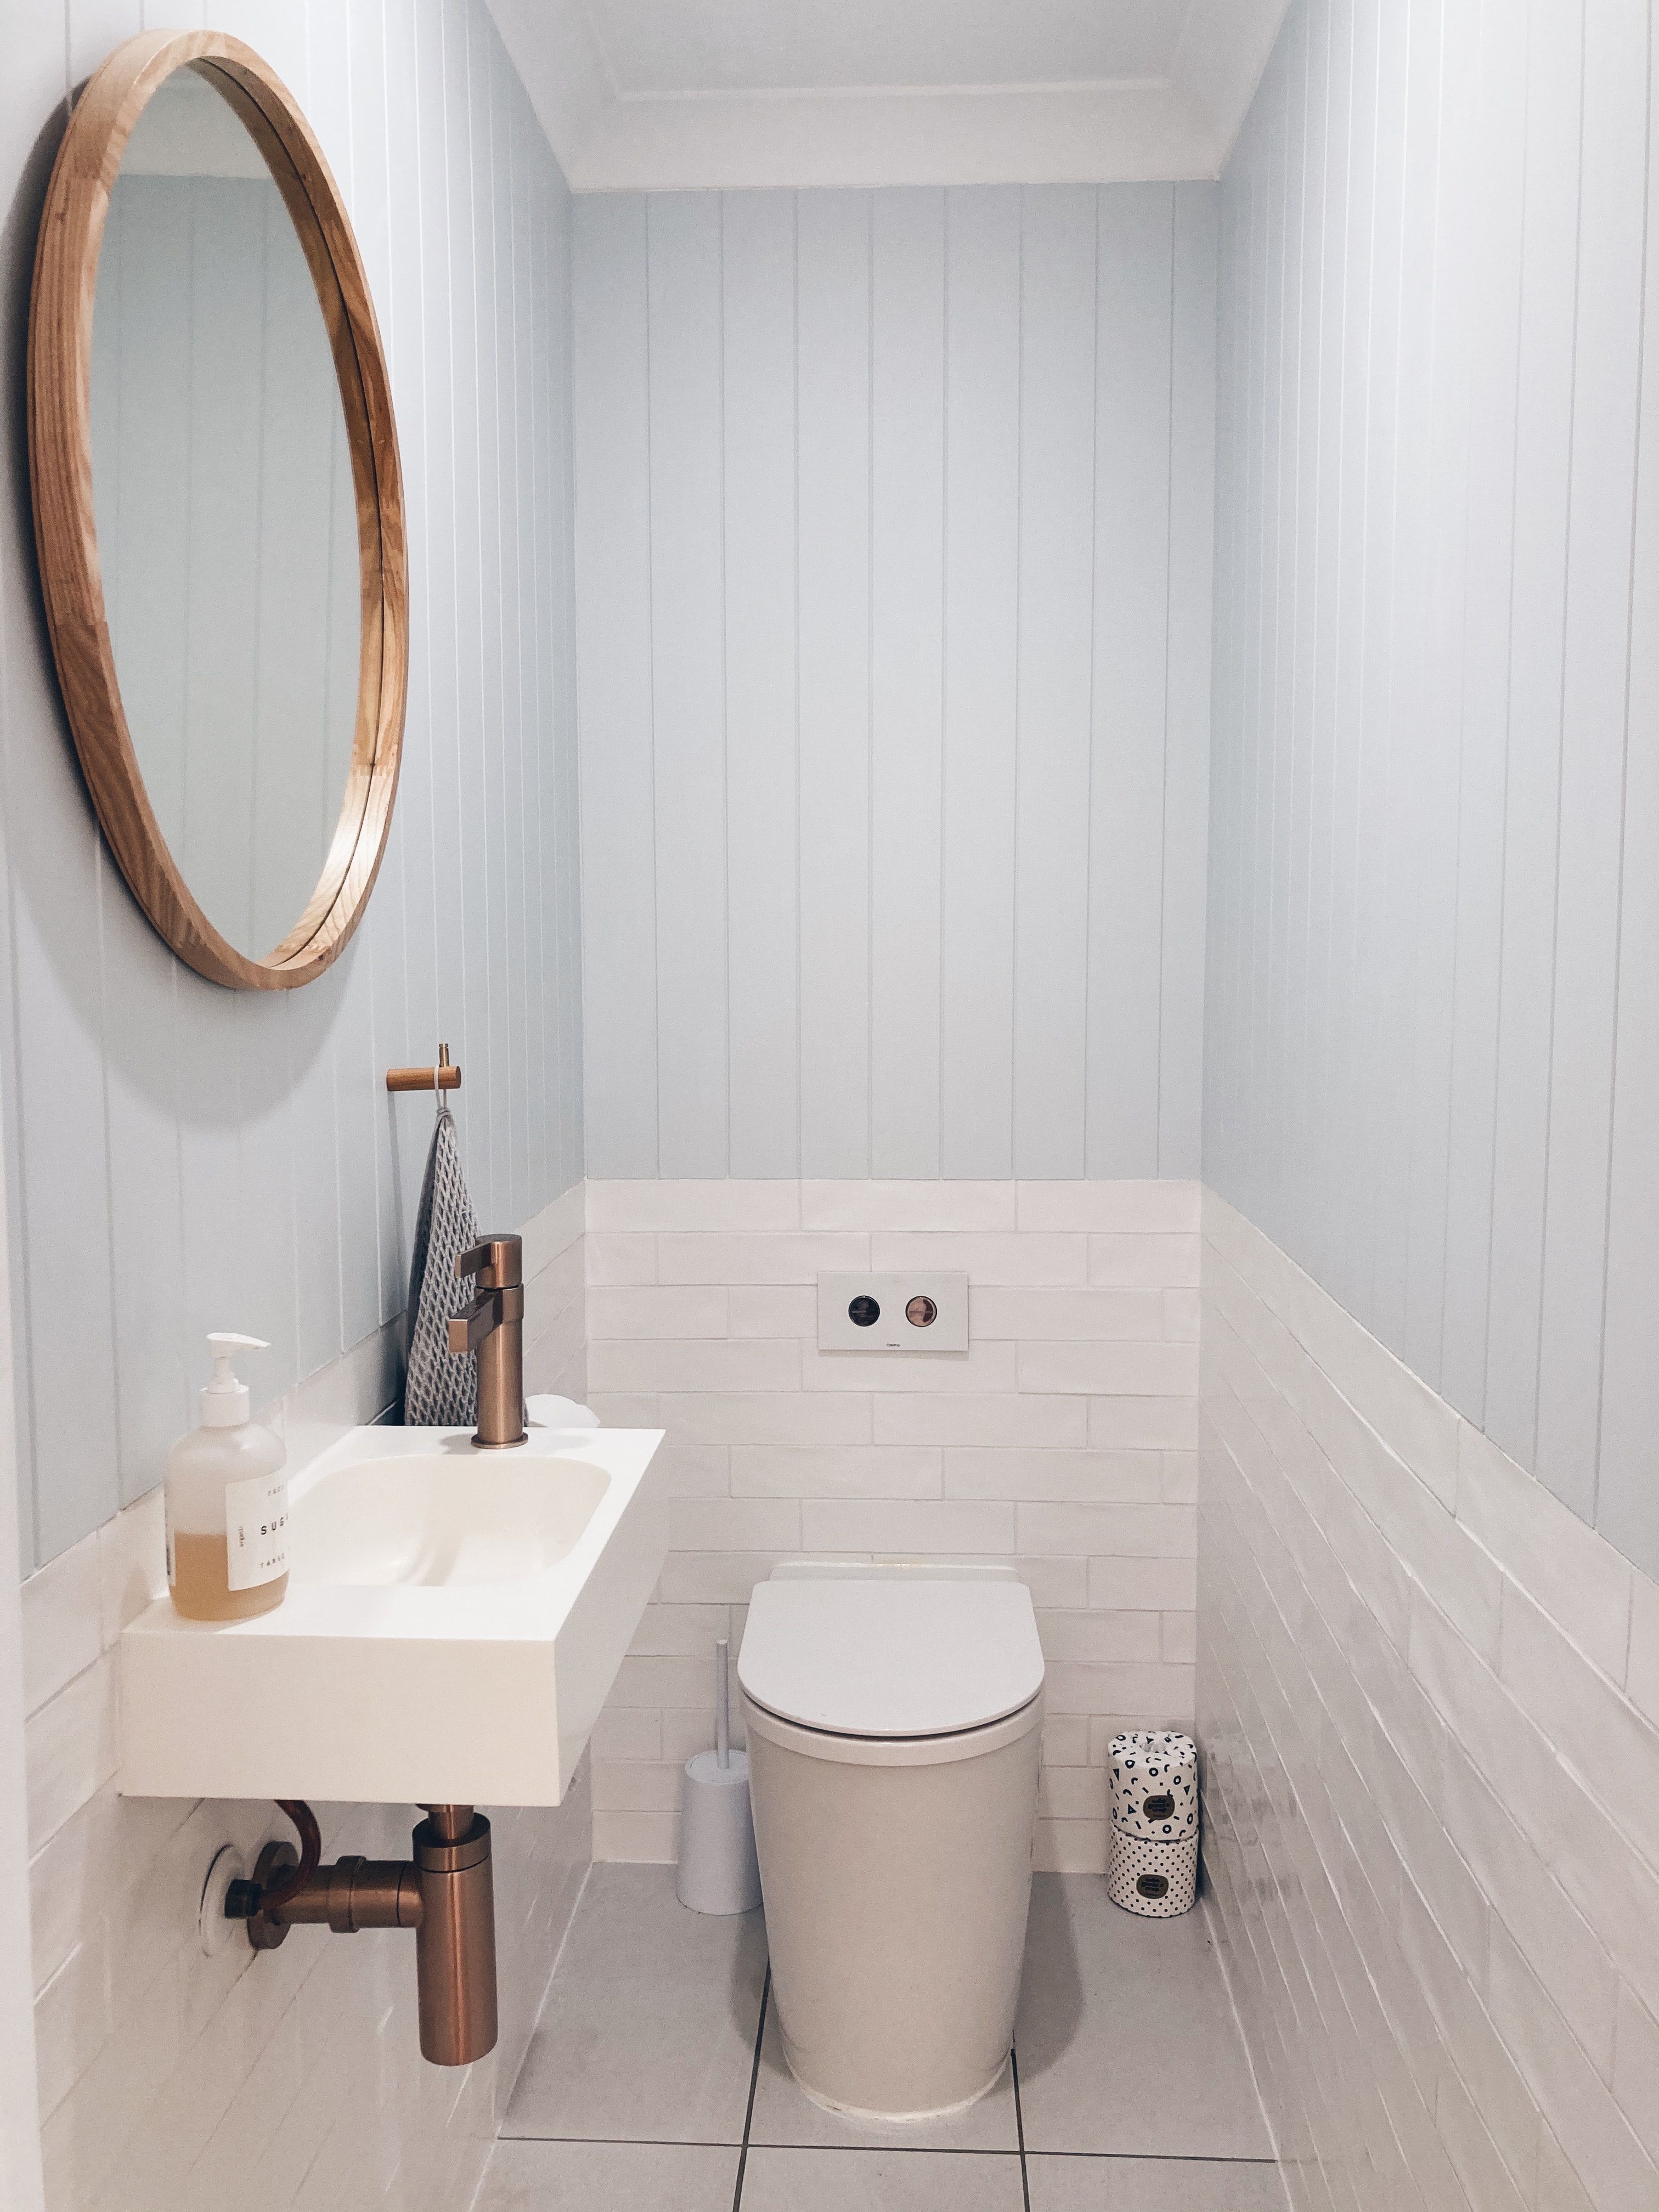 Beweren Huiskamer bijzonder Wc inspiratie voor een stijlvol toilet - Makeover.nl